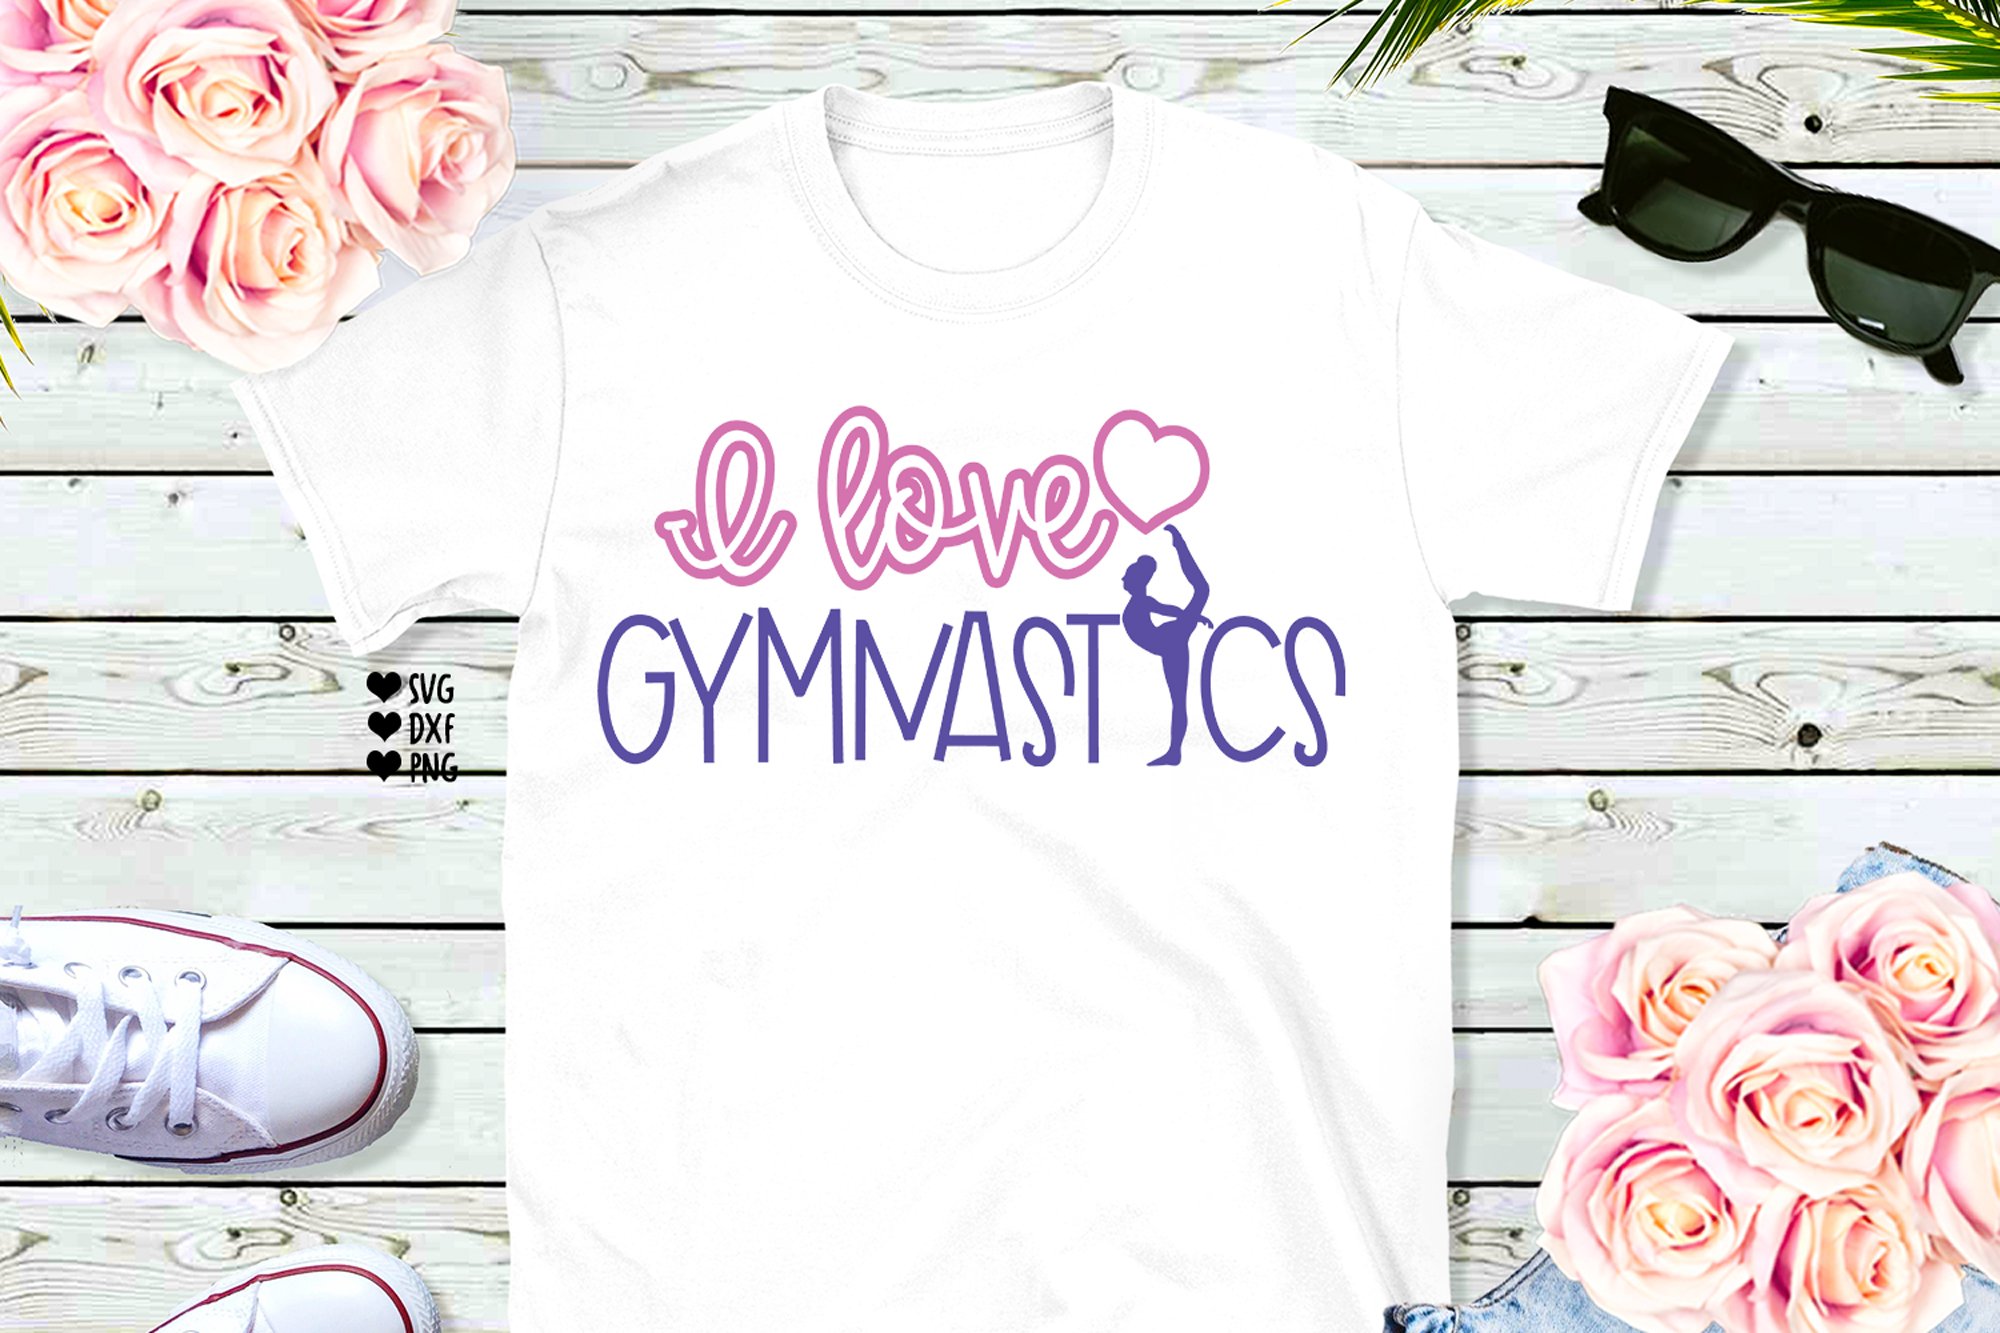 I love Gymnastics - Gymnastics Mom preview image.